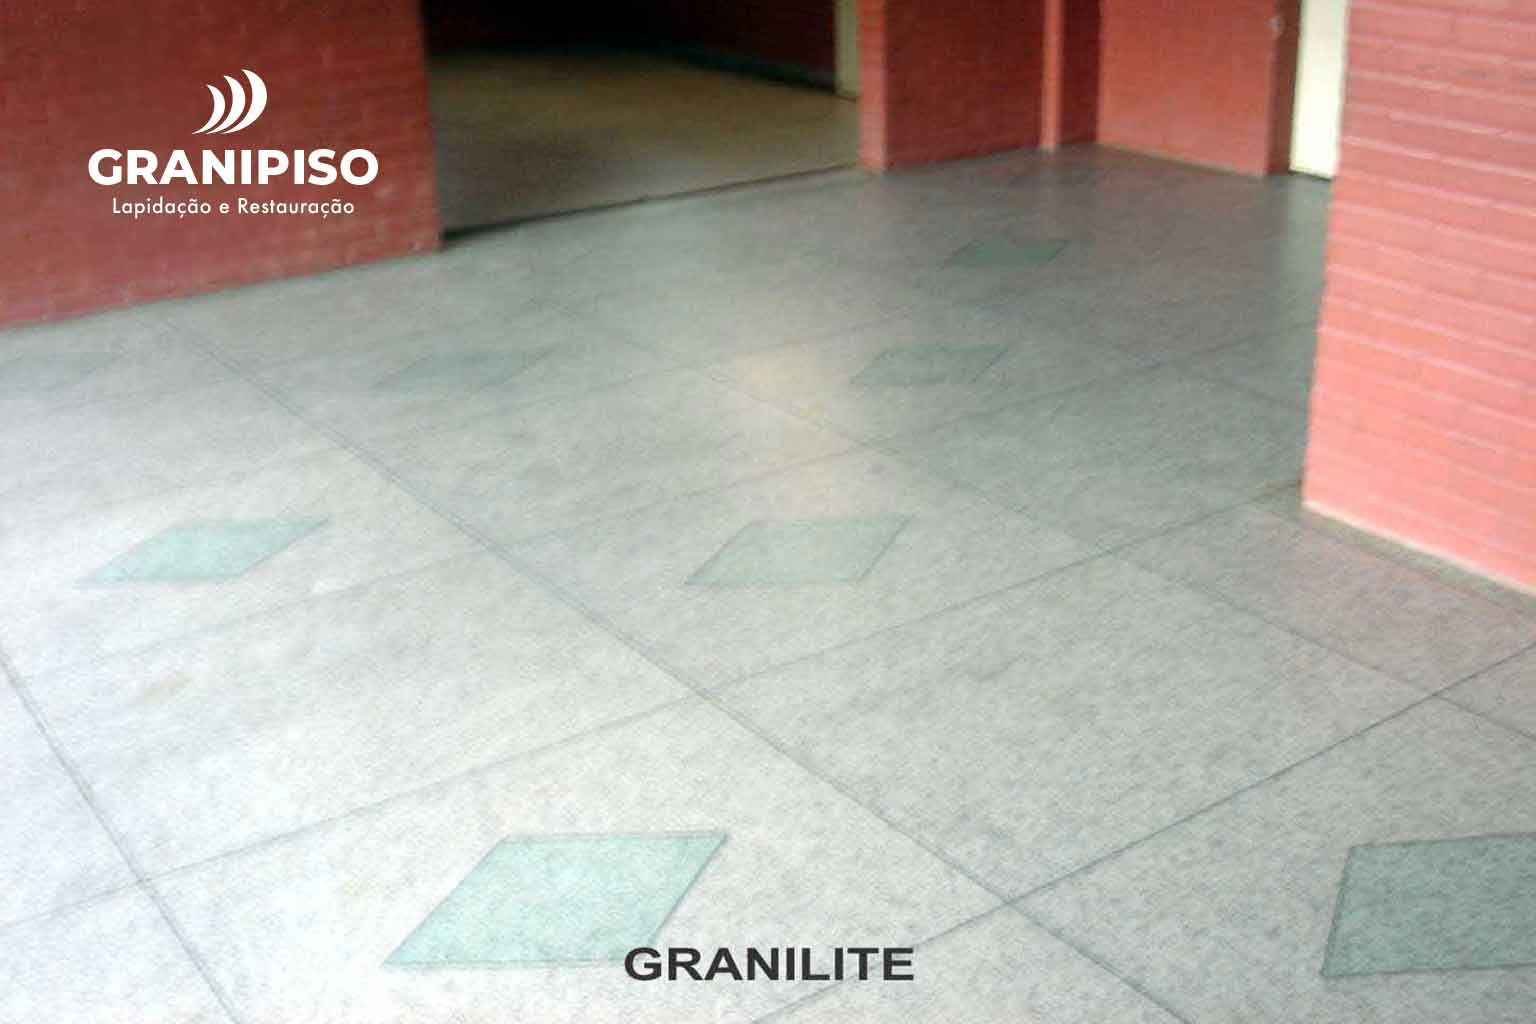 piso-granilite-pronto-de-socorro-hospital-granipiso-01